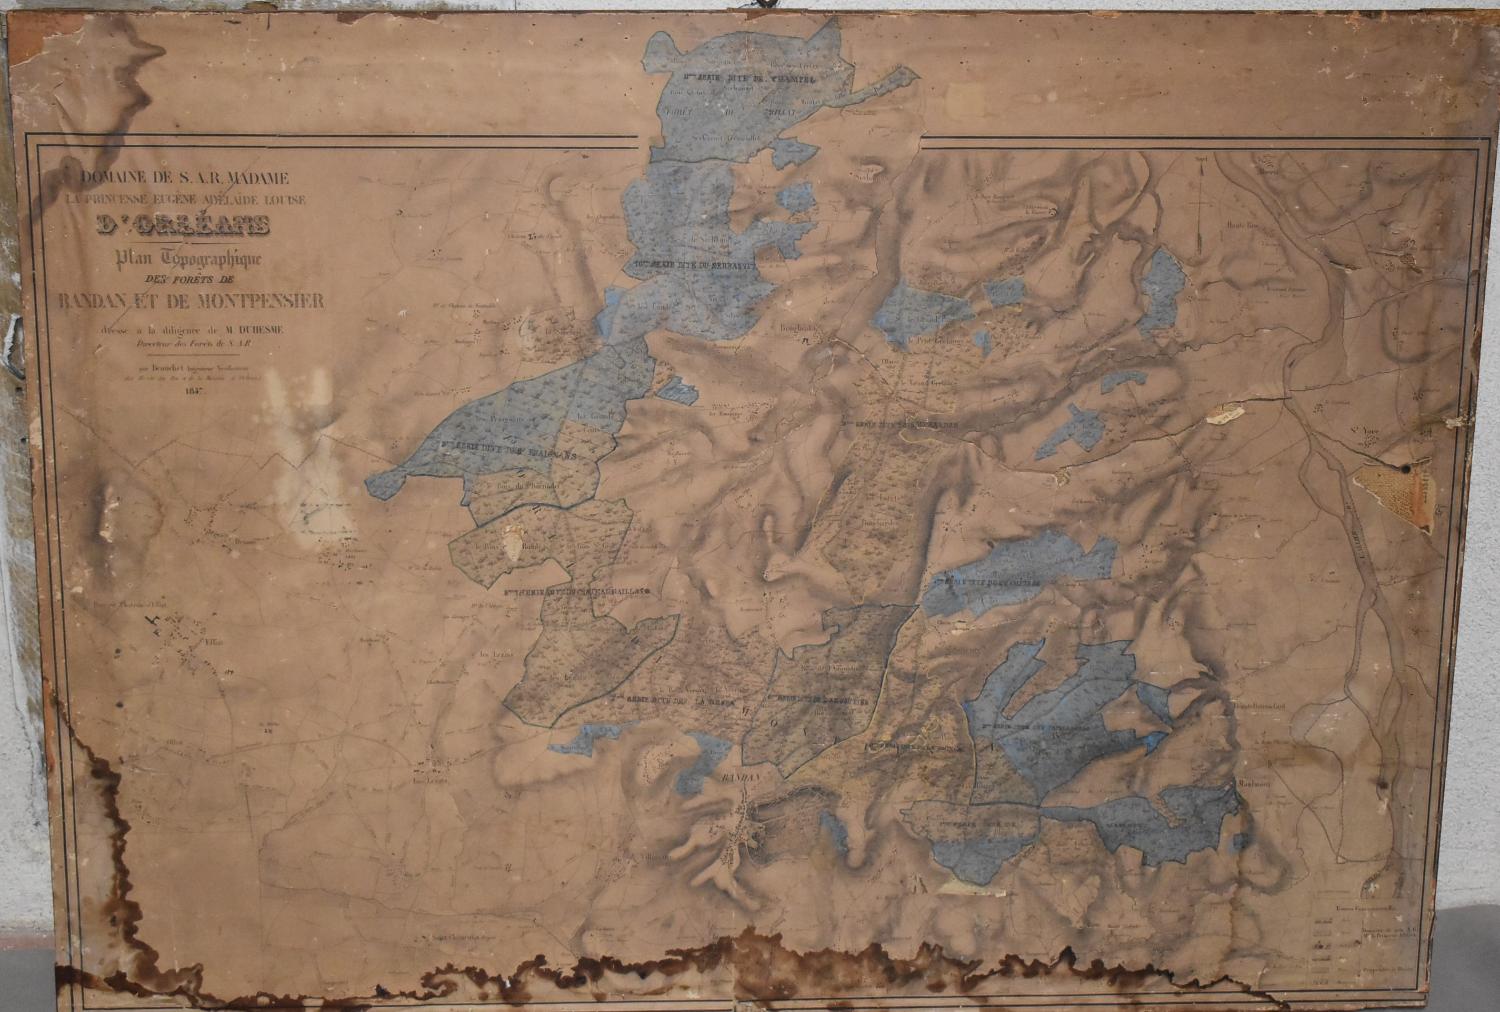 Plan topographique des forêts de Randan et de de Montpensier (1847)